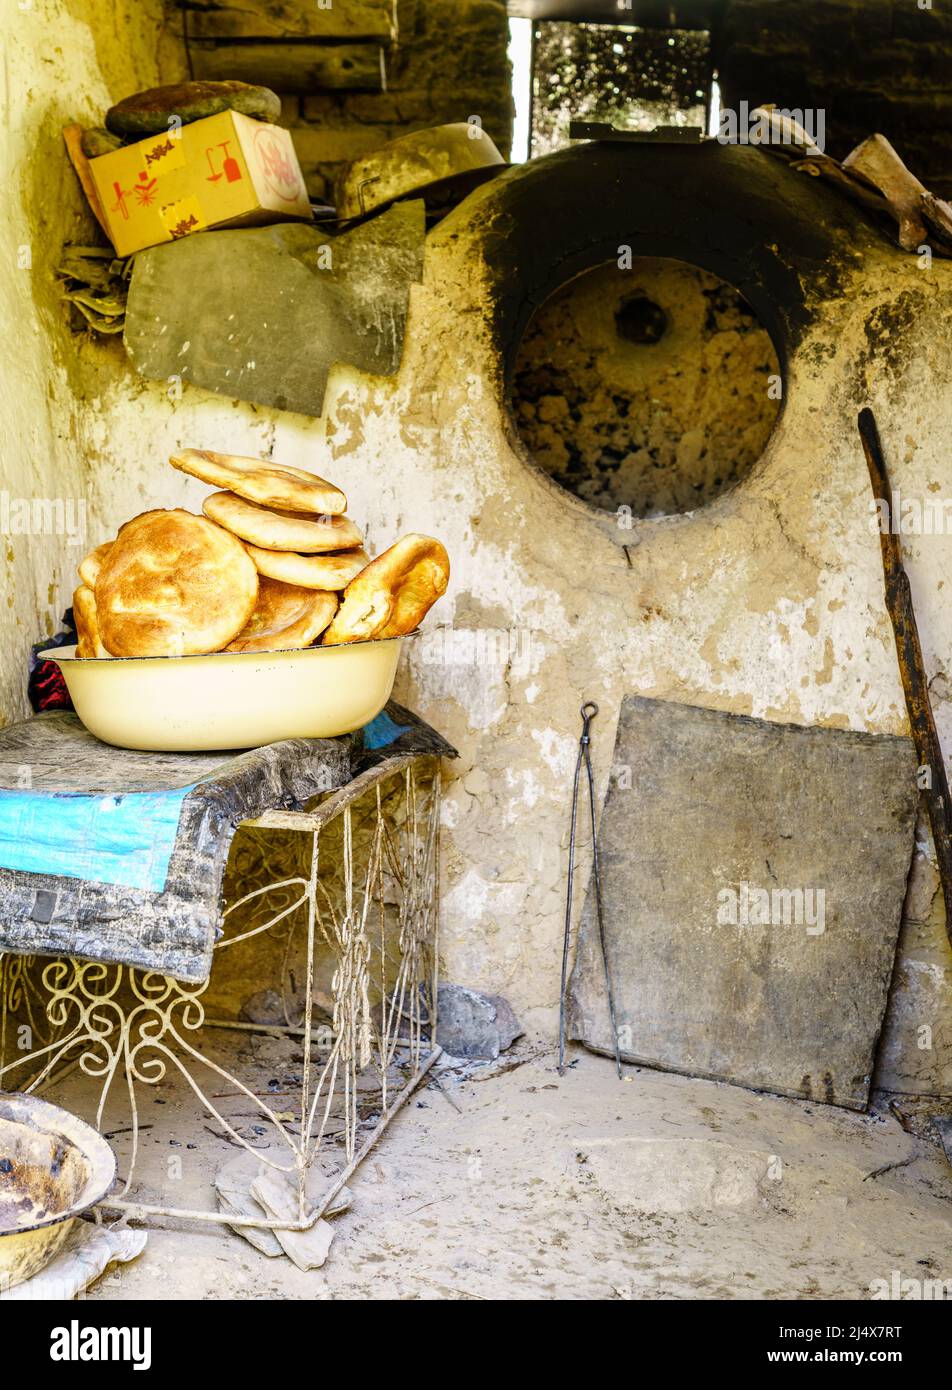 Frisch gebackenes Non oder Naan - traditionelles tadschikisches Brot in einer primitiven Küche in einem abgelegenen Dorf in Tadschikistan Stockfoto